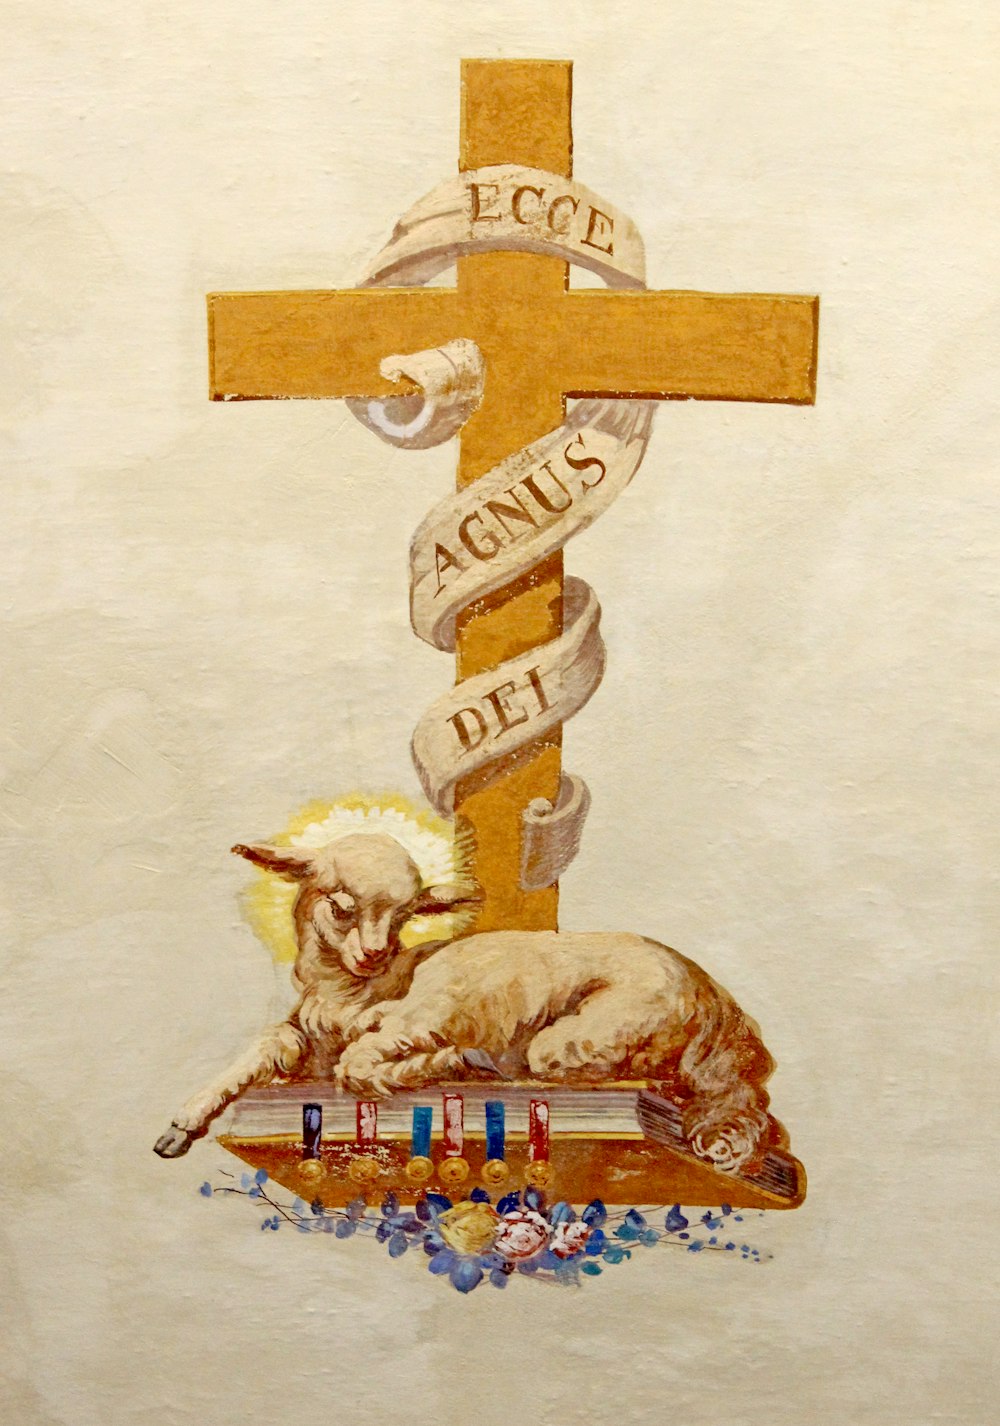 agnello sulla Bibbia sotto l'illustrazione della croce